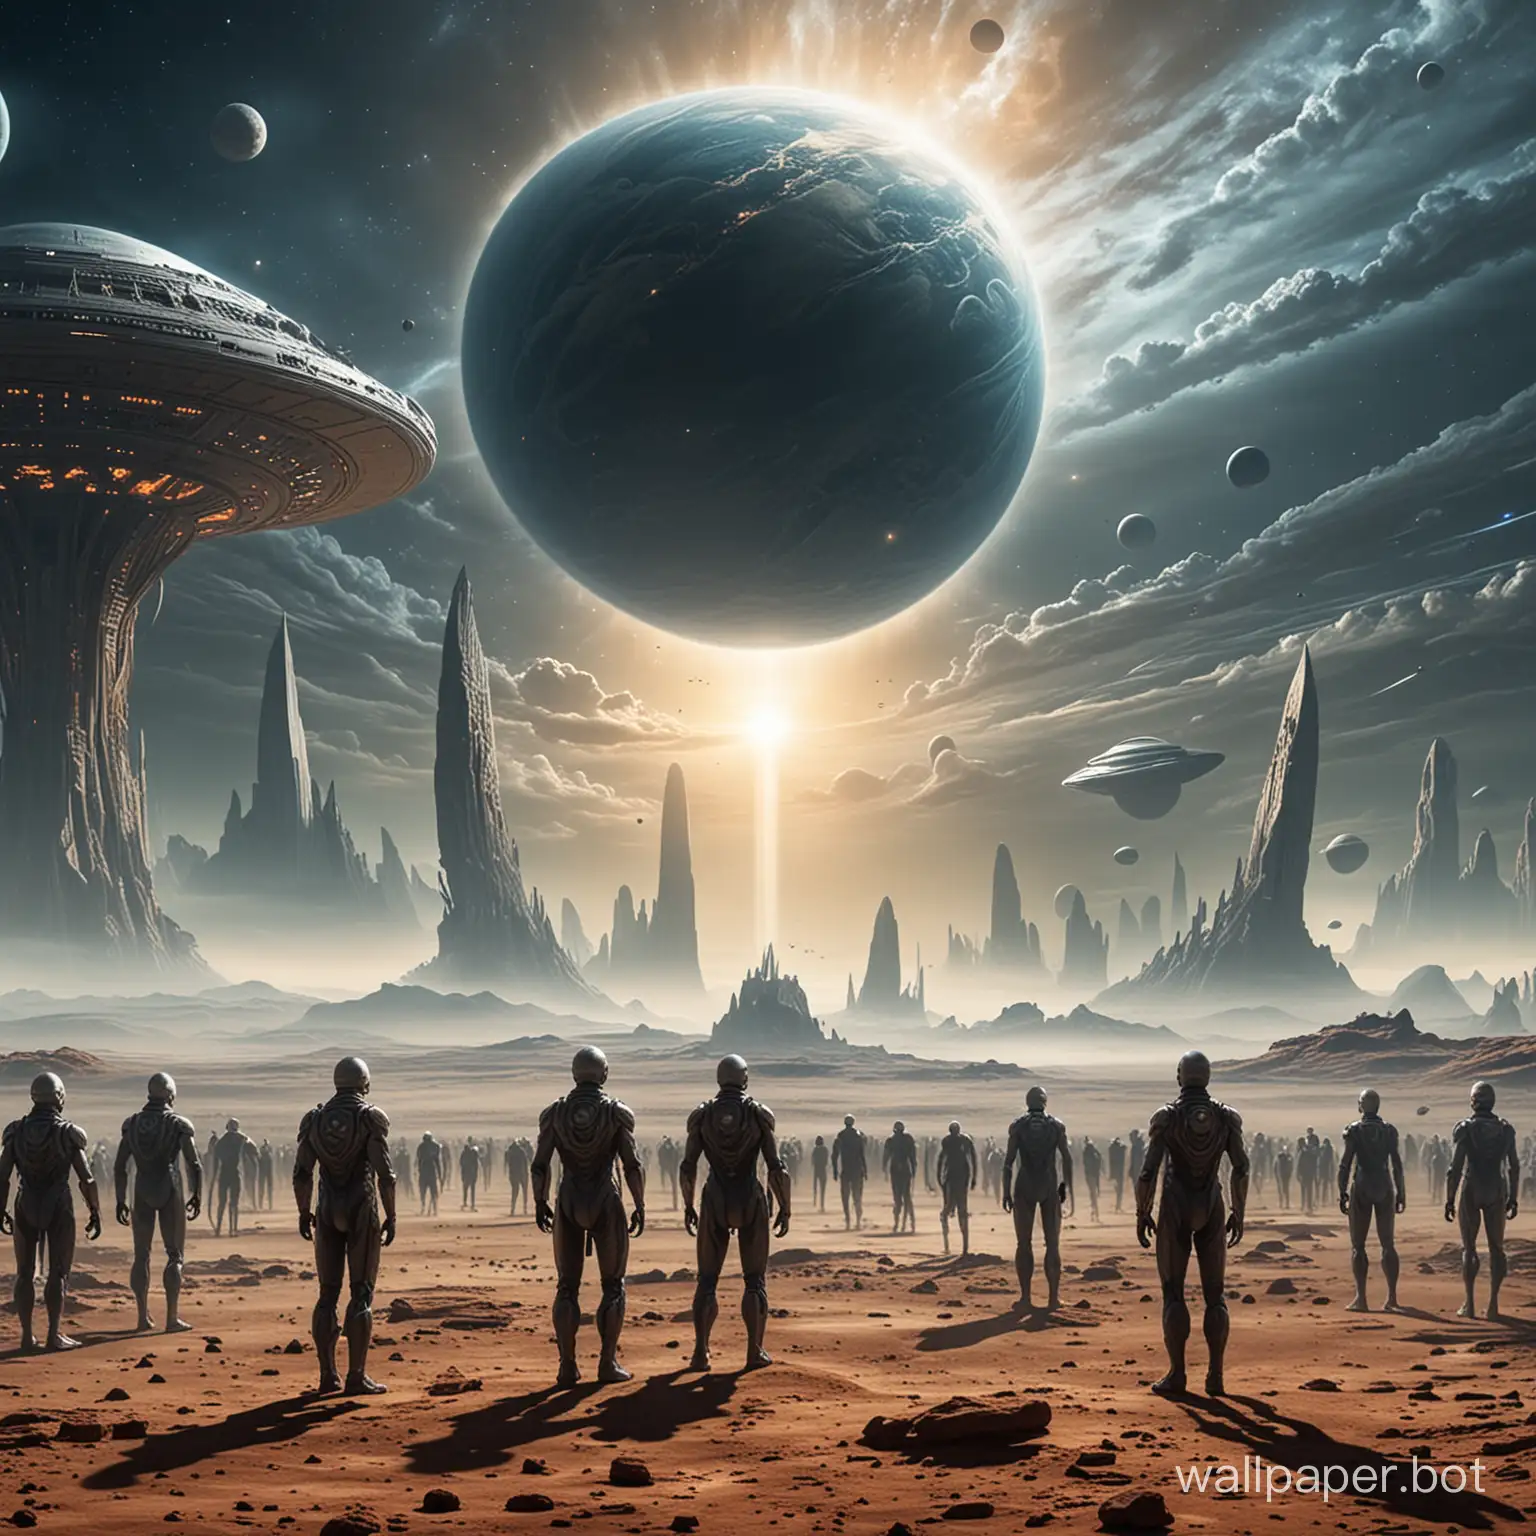 Встреча землян с инопланетной цивилизацией